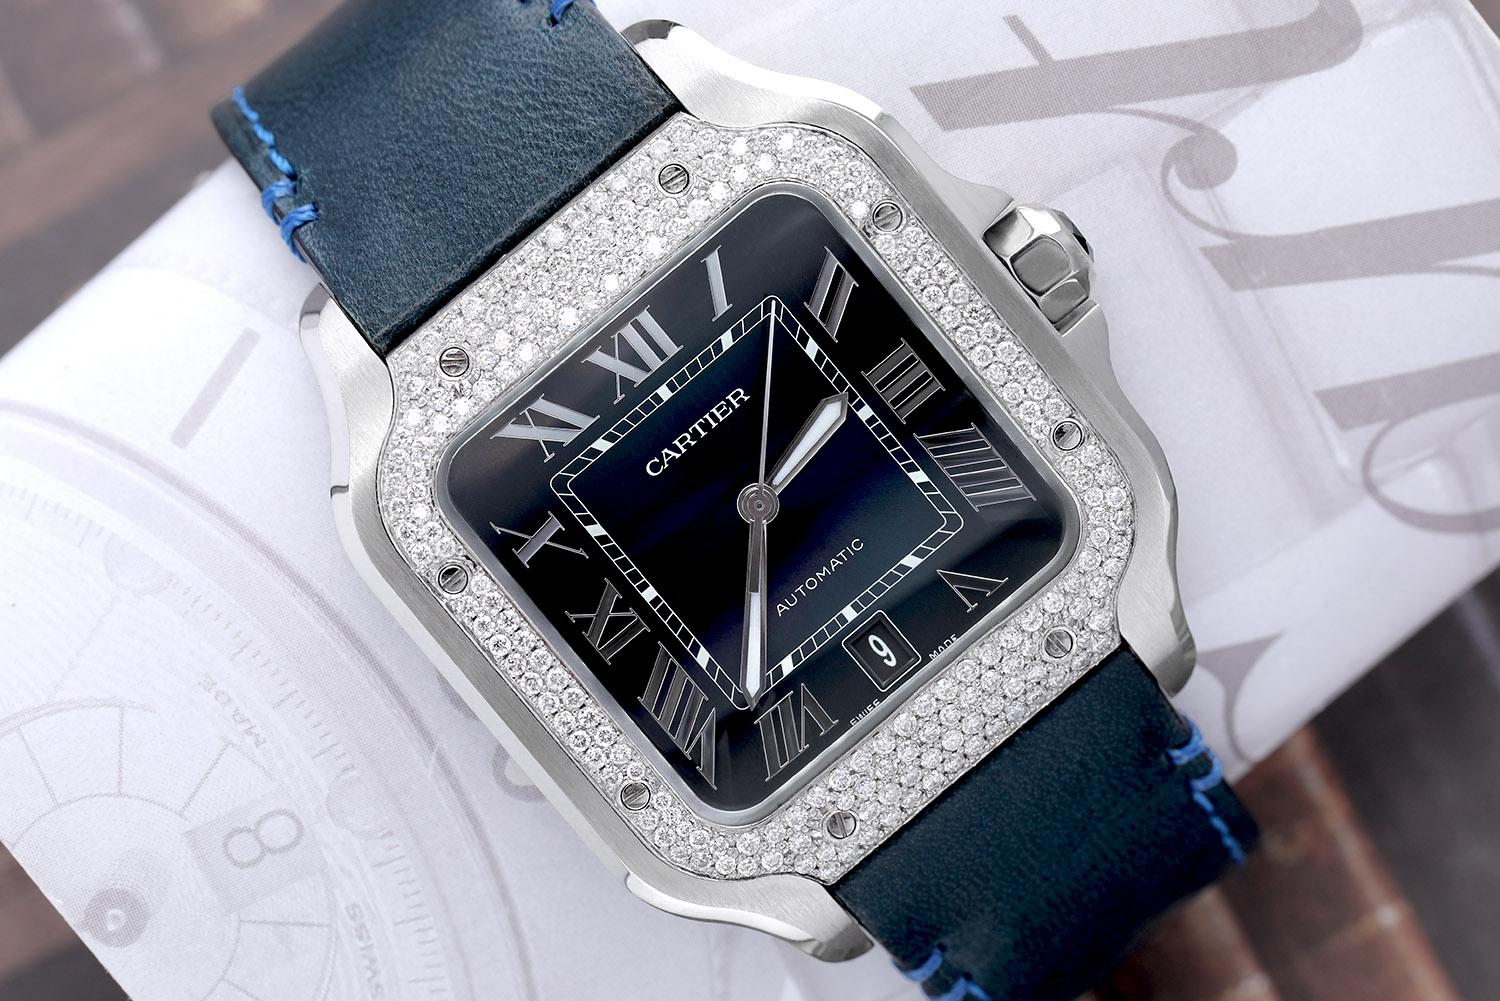 Montre Cartier Santos Large en acier inoxydable avec lunette à diamants personnalisée, cadran bleu à chiffres romains (usine) et bracelet en cuir bleu. 
La montre est livrée avec un bracelet supplémentaire en acier inoxydable ! Mouvement mécanique à